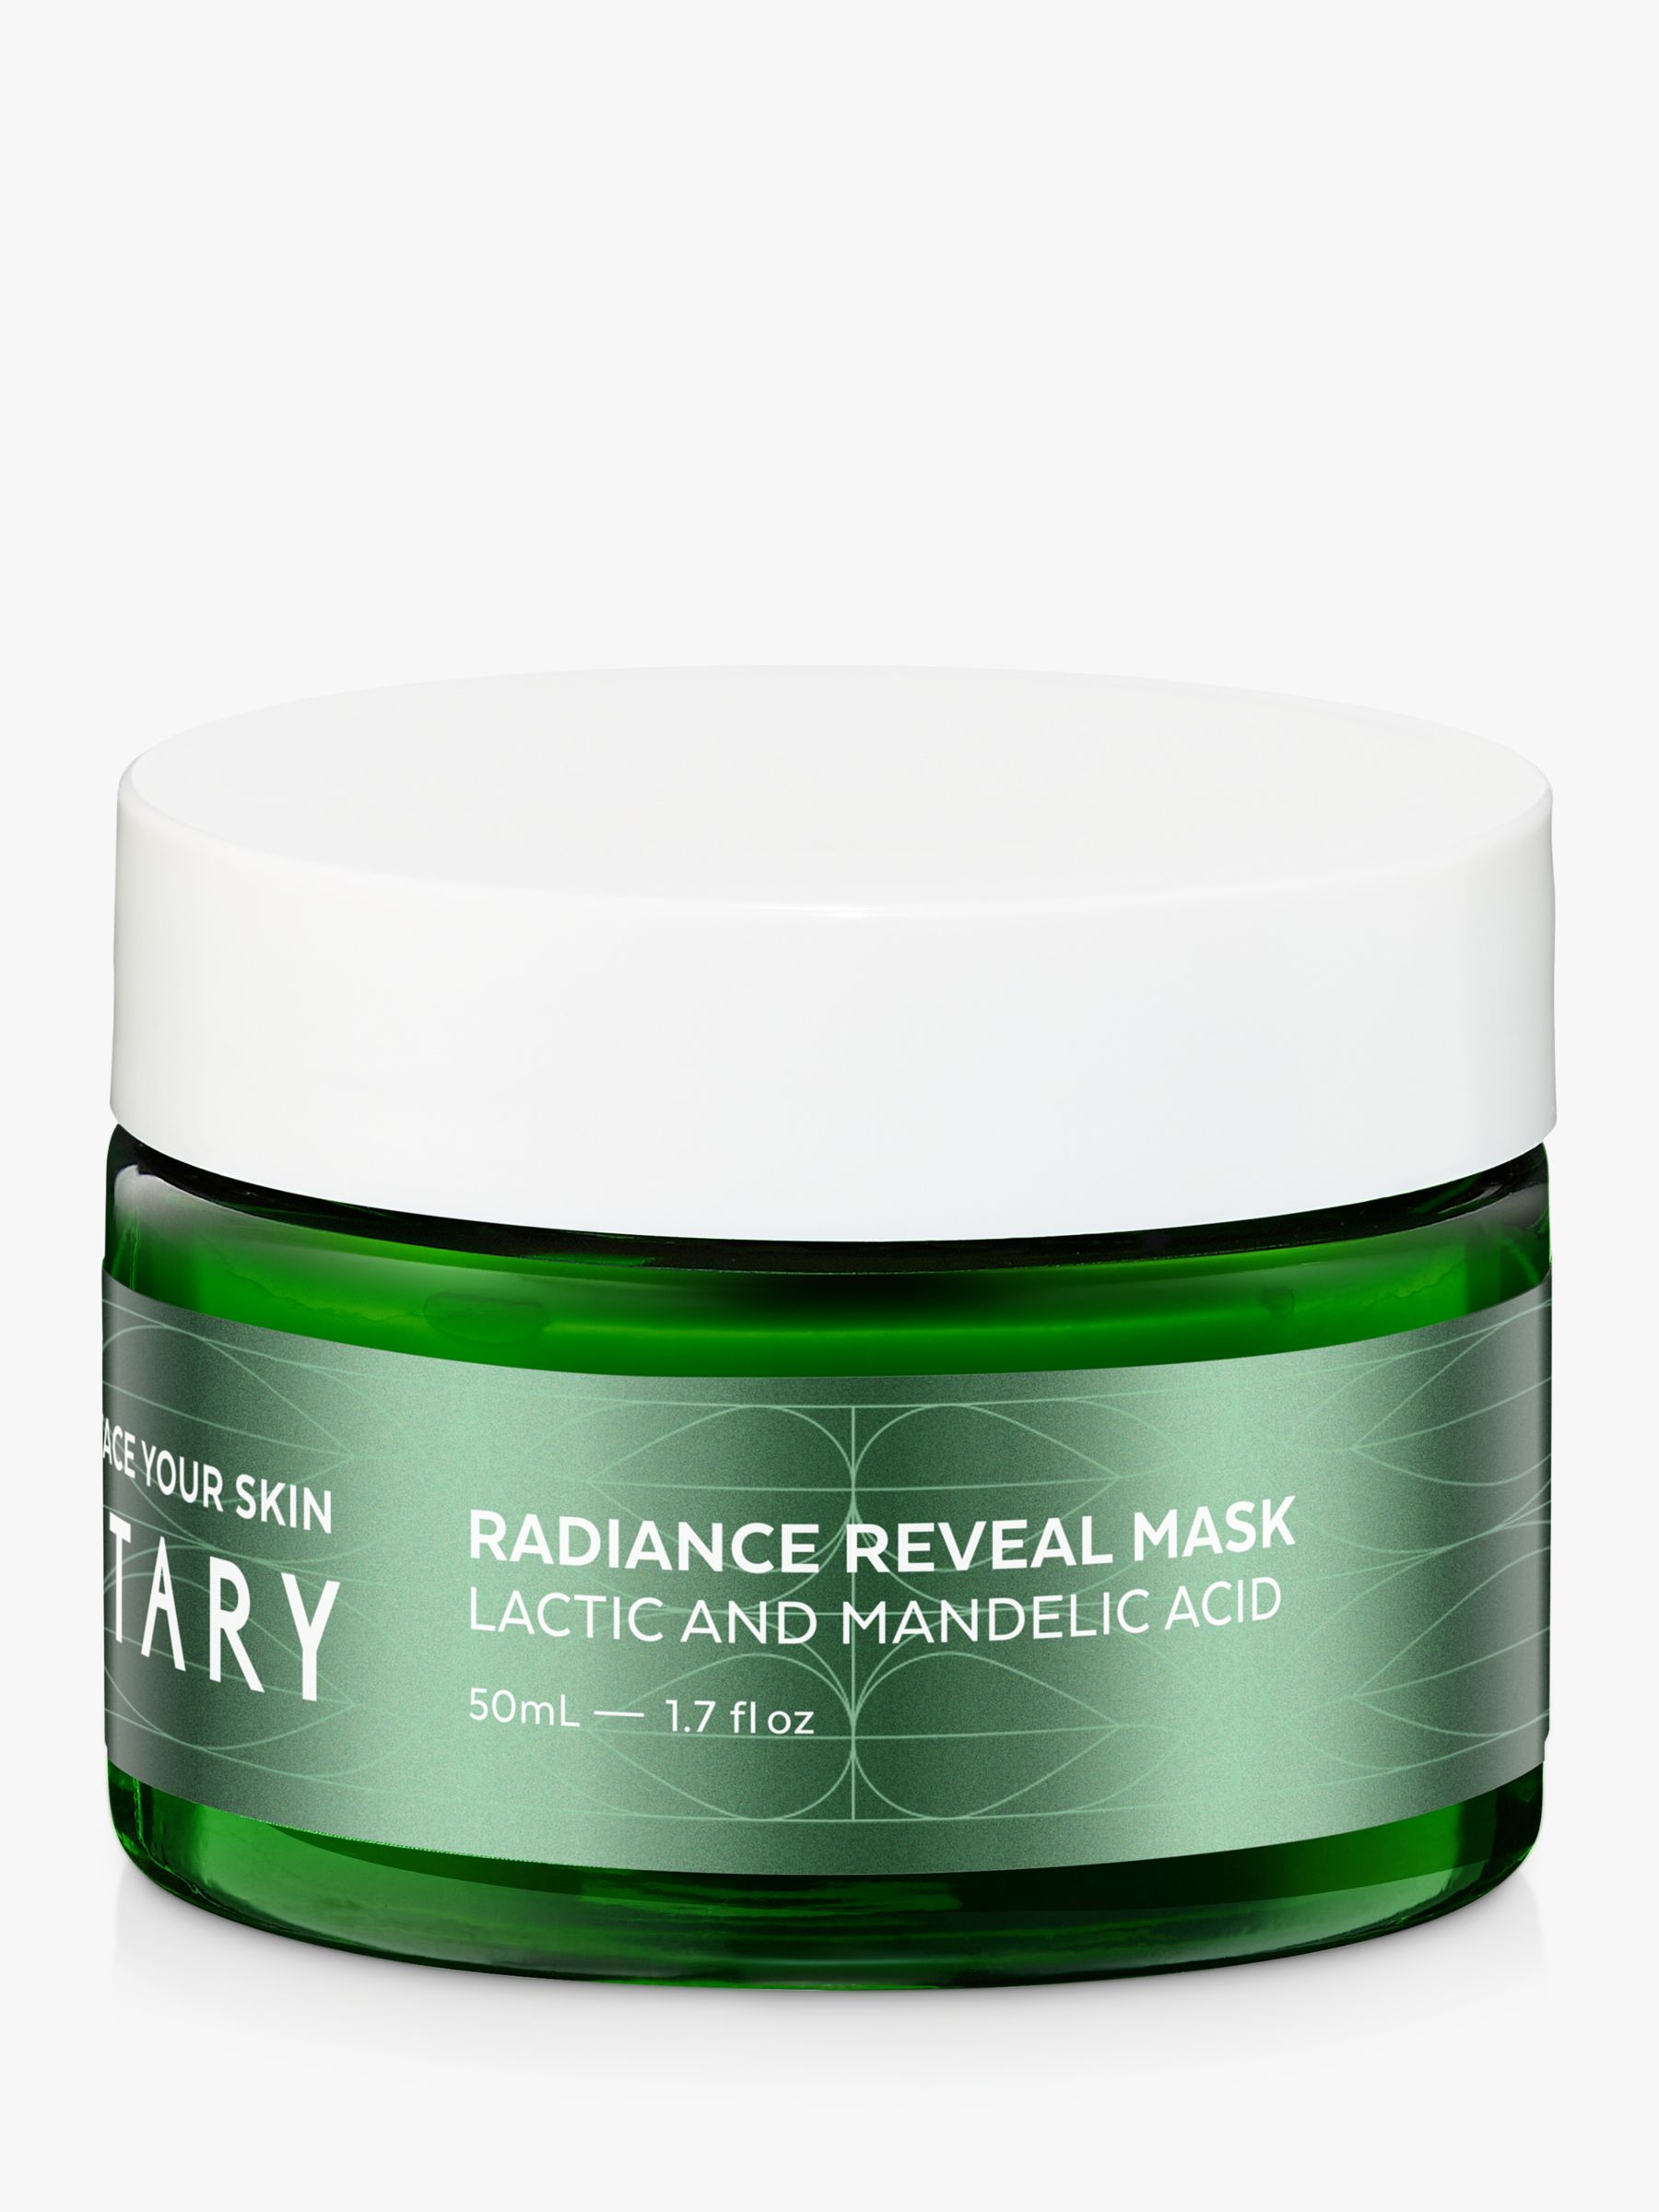 Votary Radiance Reveal Mask - Lactic and Mandelic Acid, 50ml 2